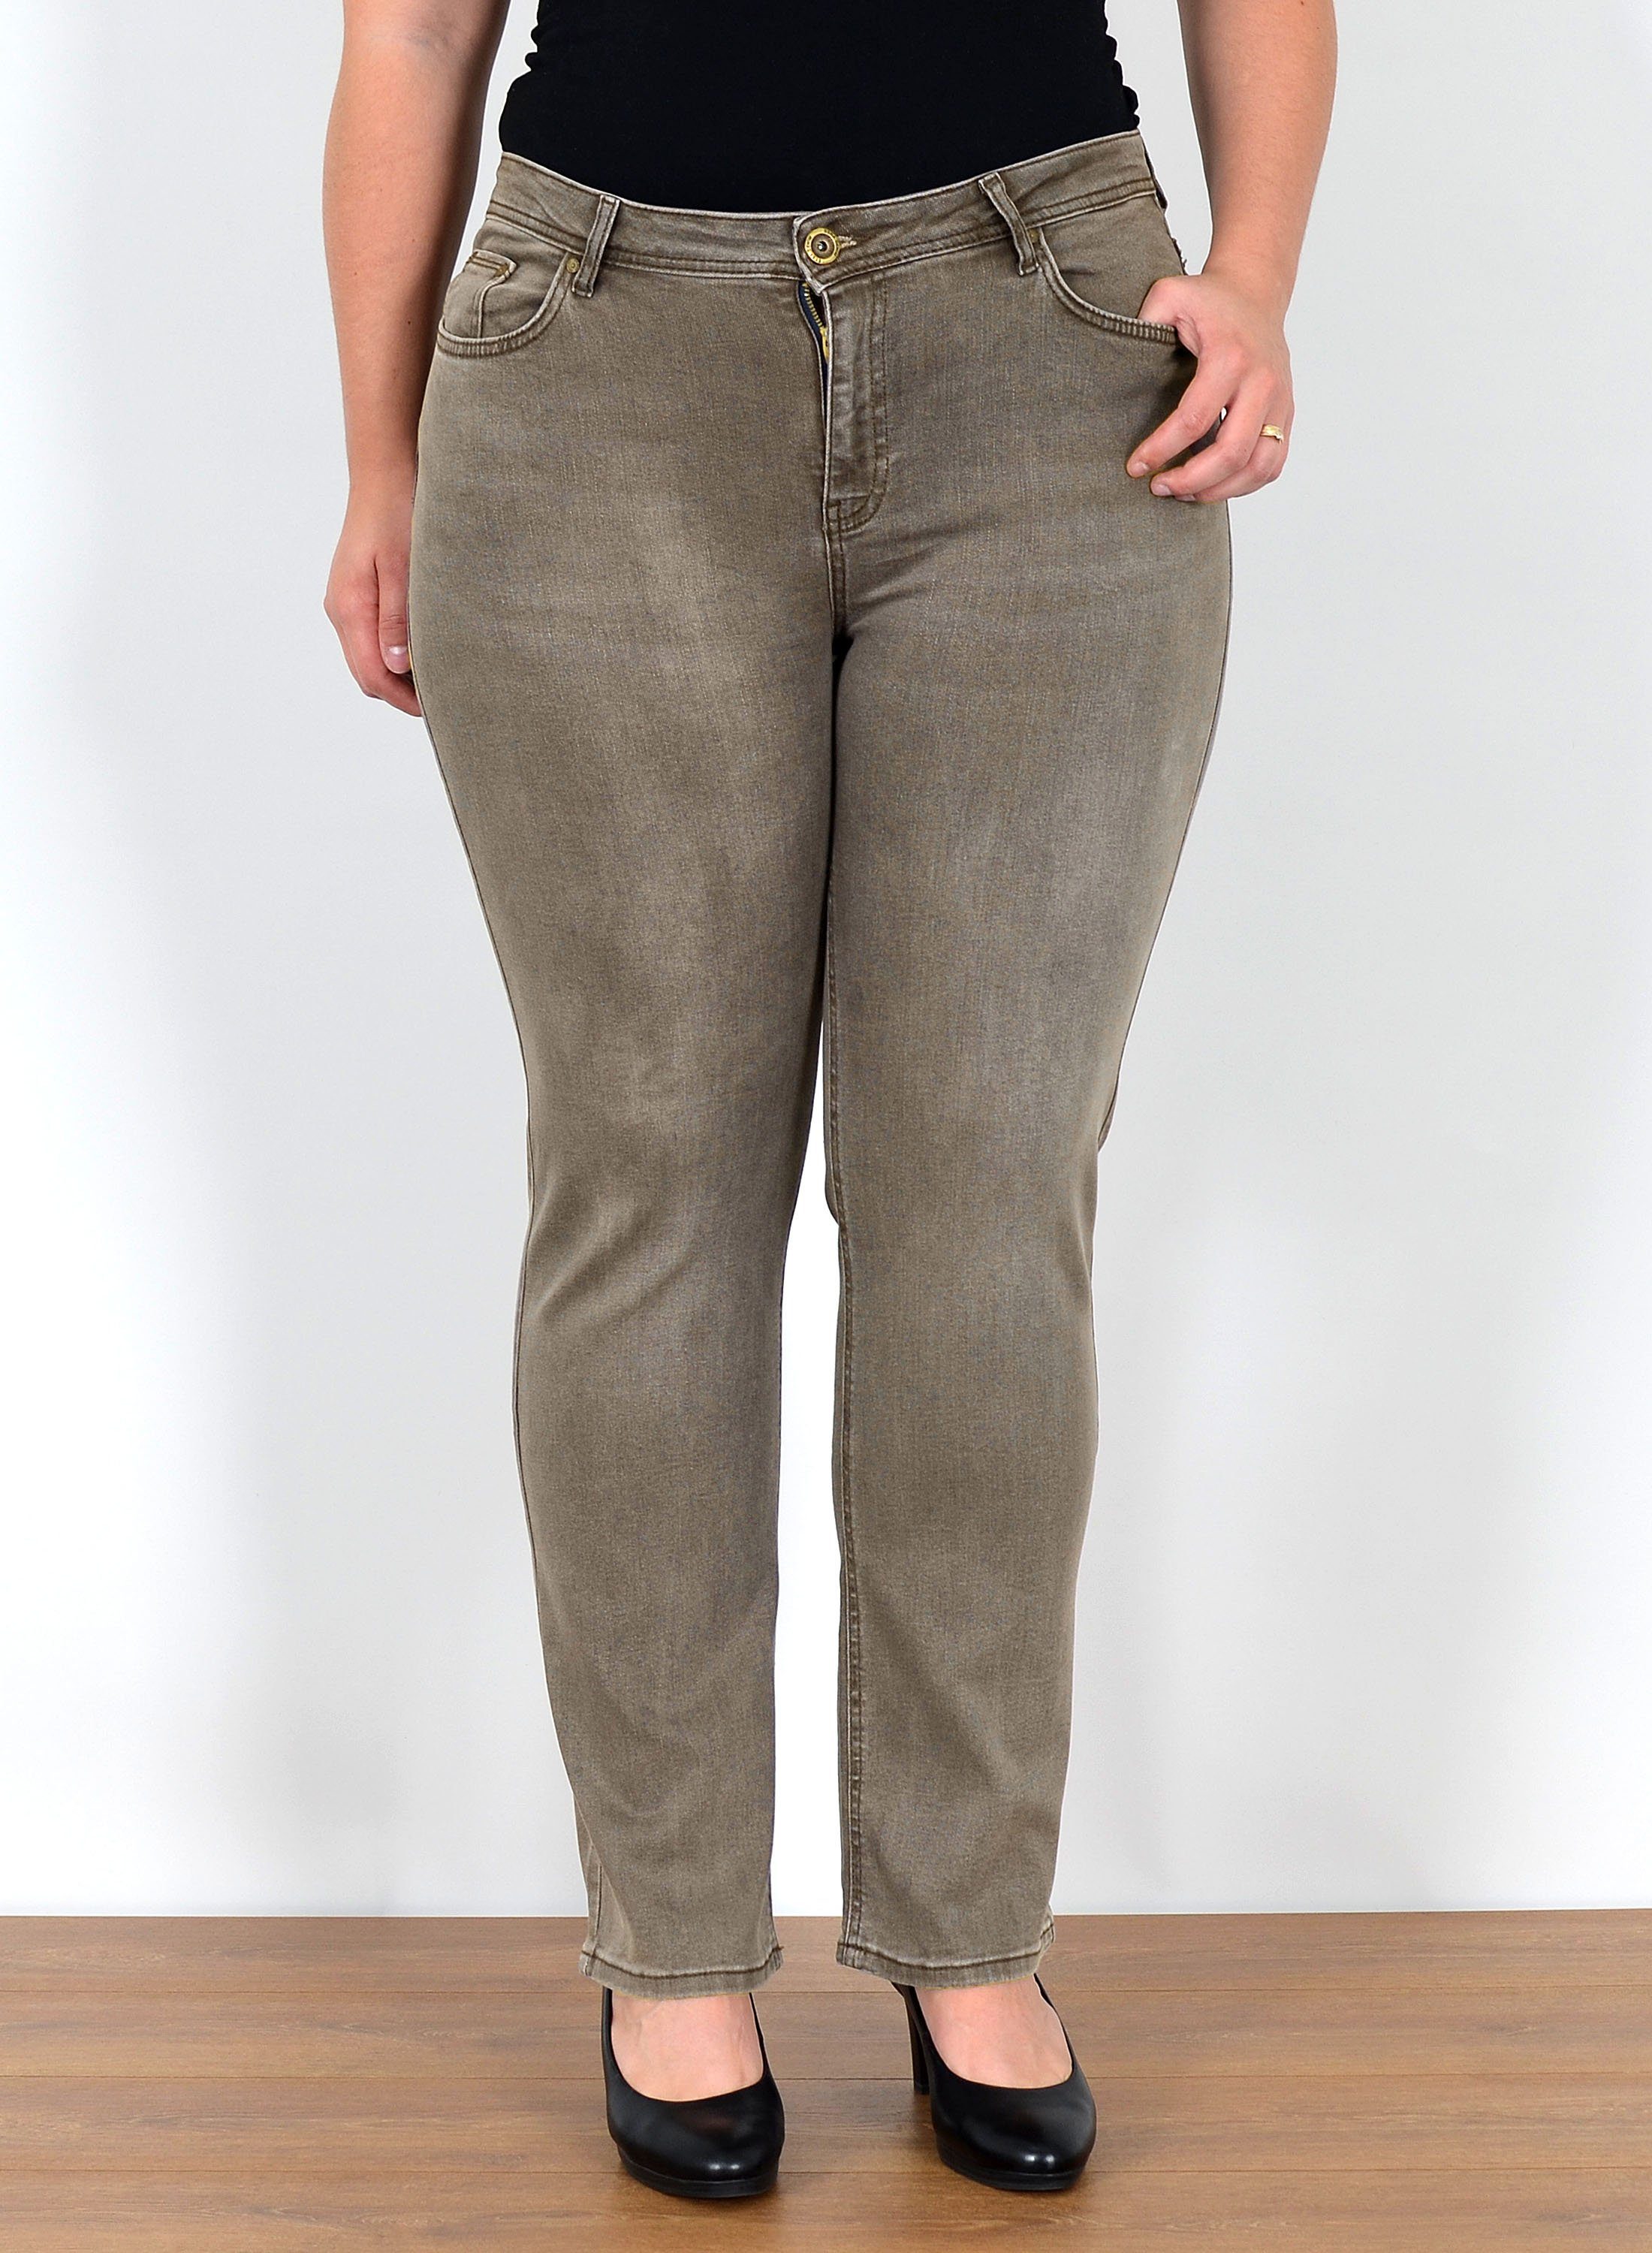 Braune Jeans für Damen kaufen » Braune Jeanshosen | OTTO